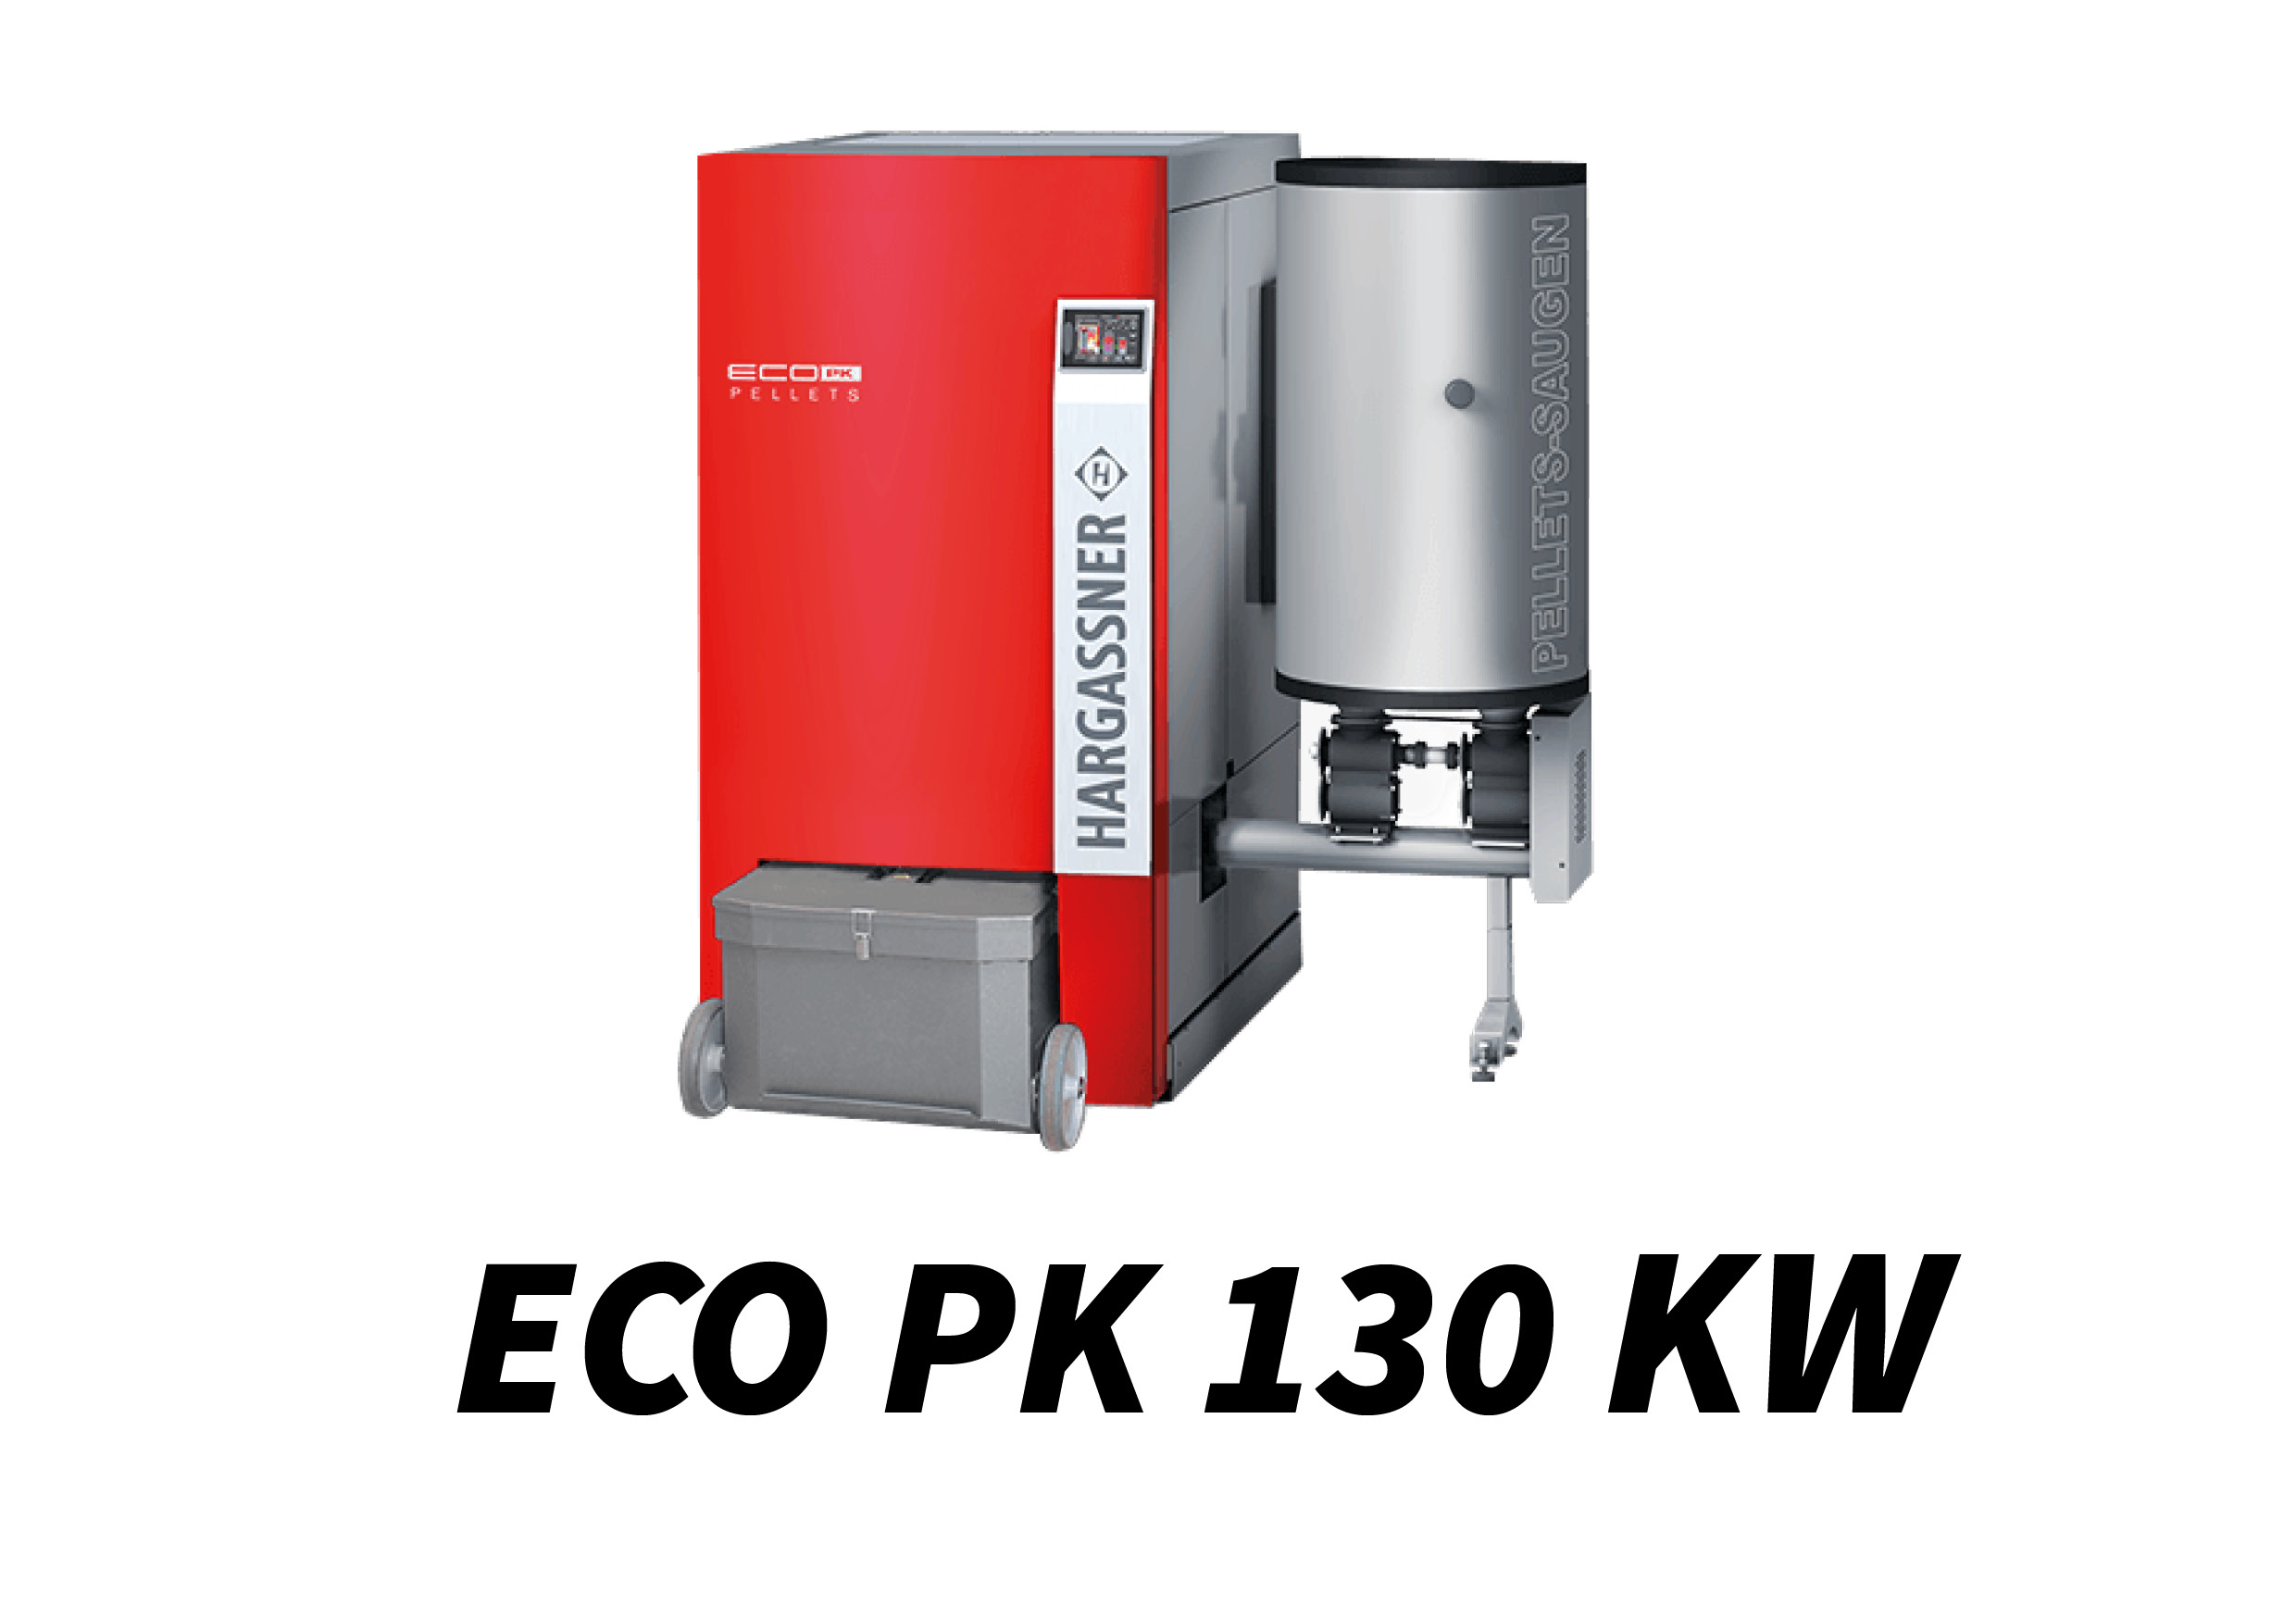 ECO PK 130 kW